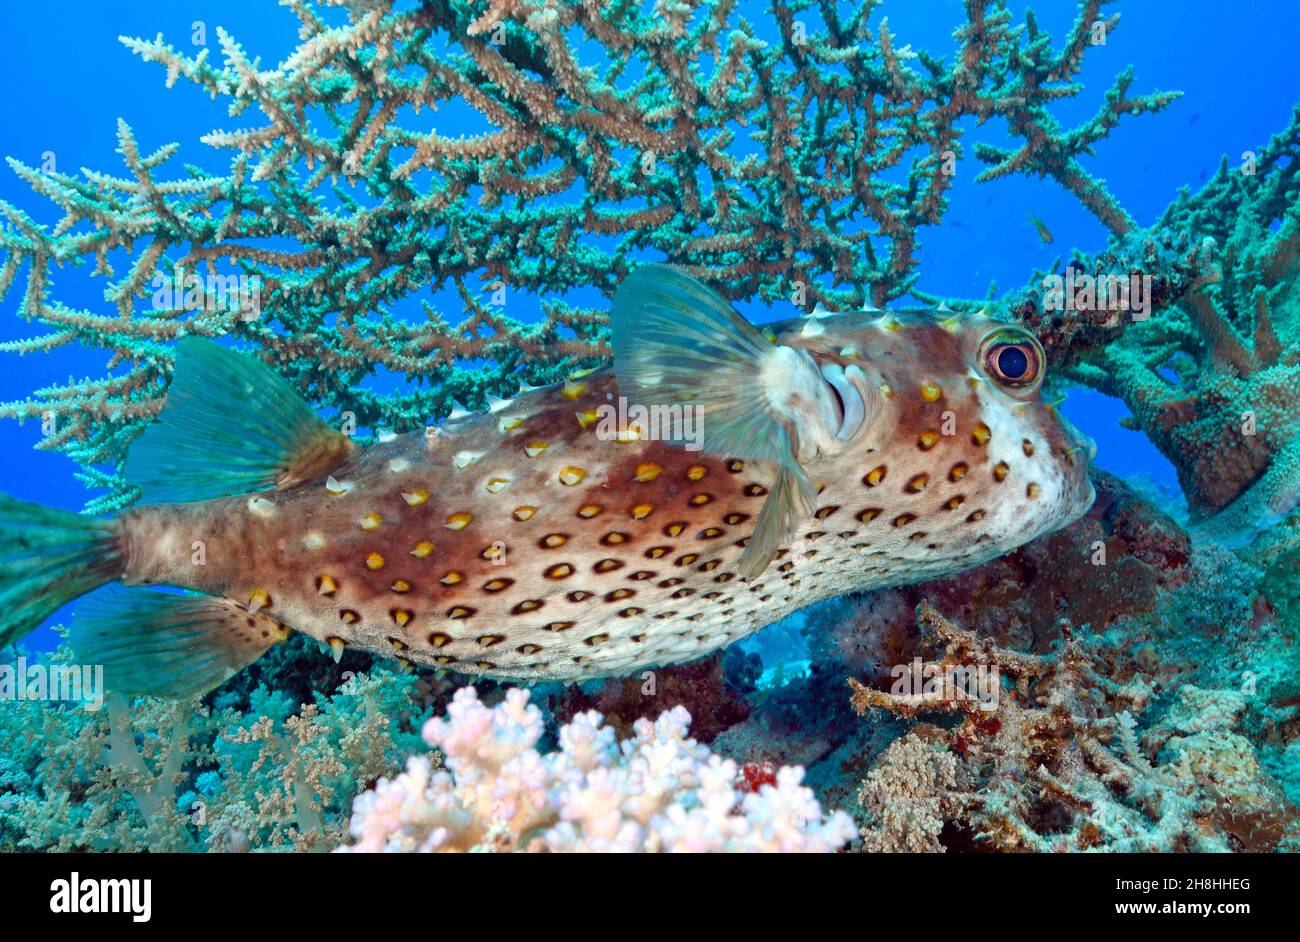 Égypte, Mer Rouge, corégone de porc (Diodon hystrix) sur fond de coraux acropora sp Banque D'Images